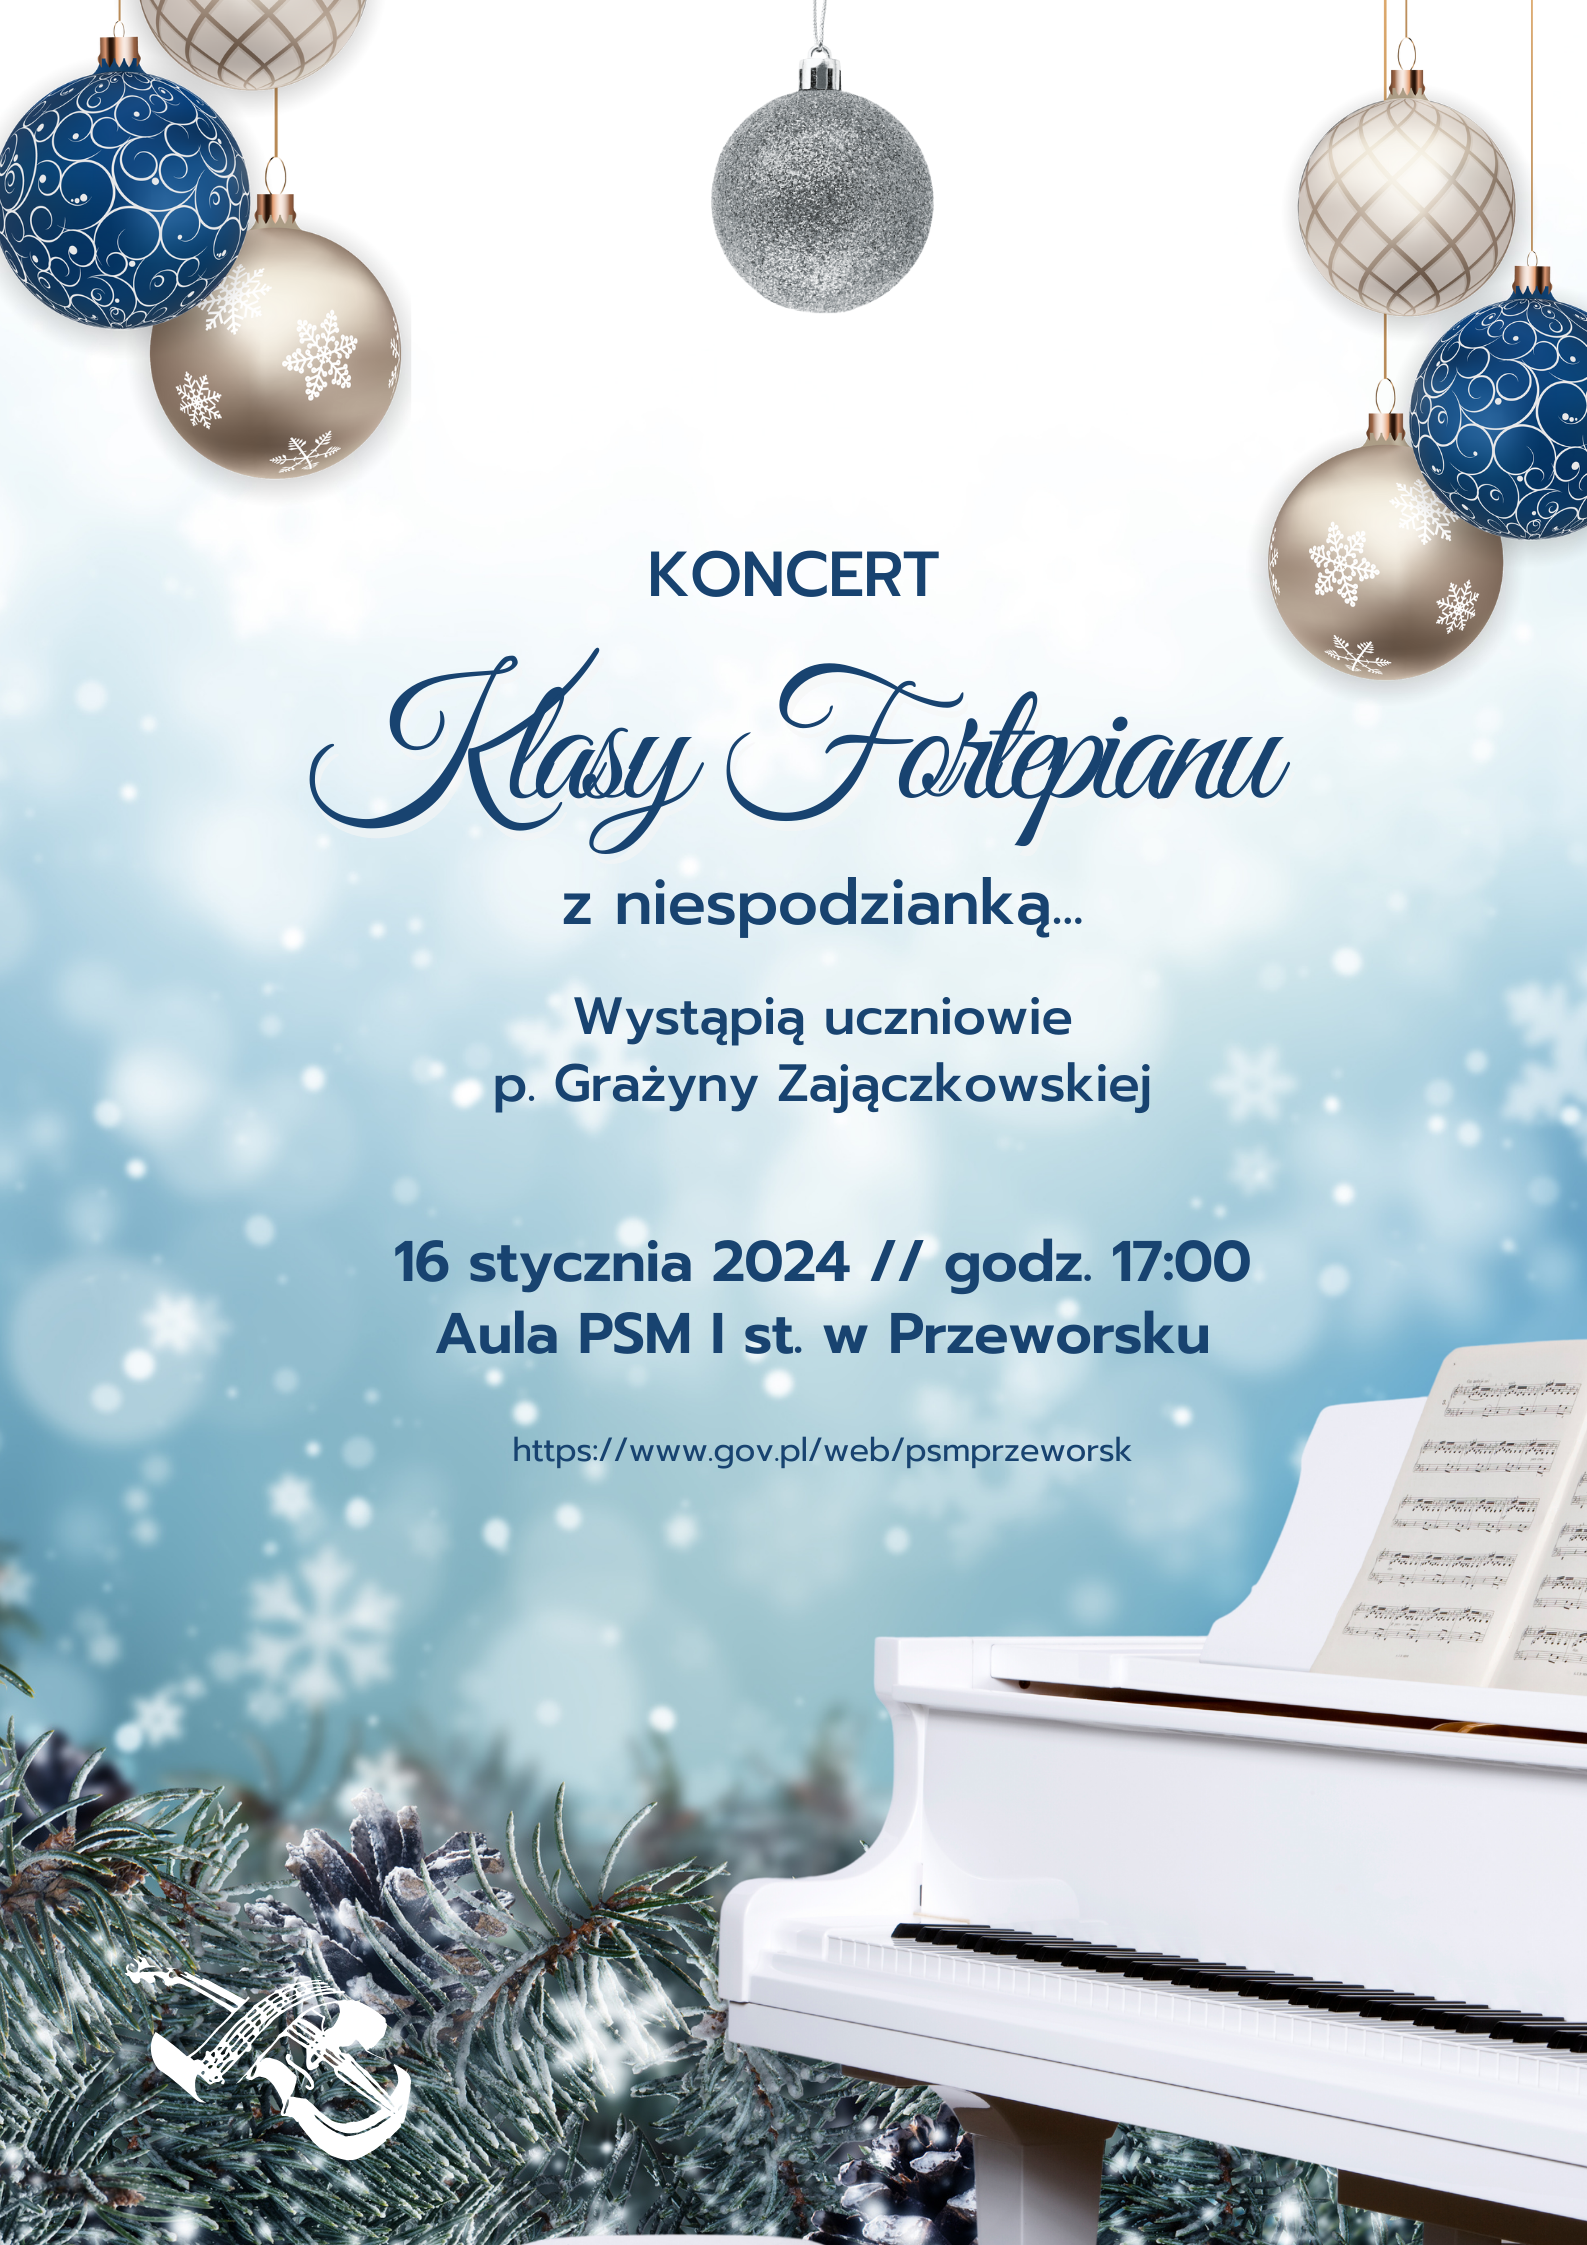 Koncert klasy fortepianu p. Grażyny Zajączkowskiej